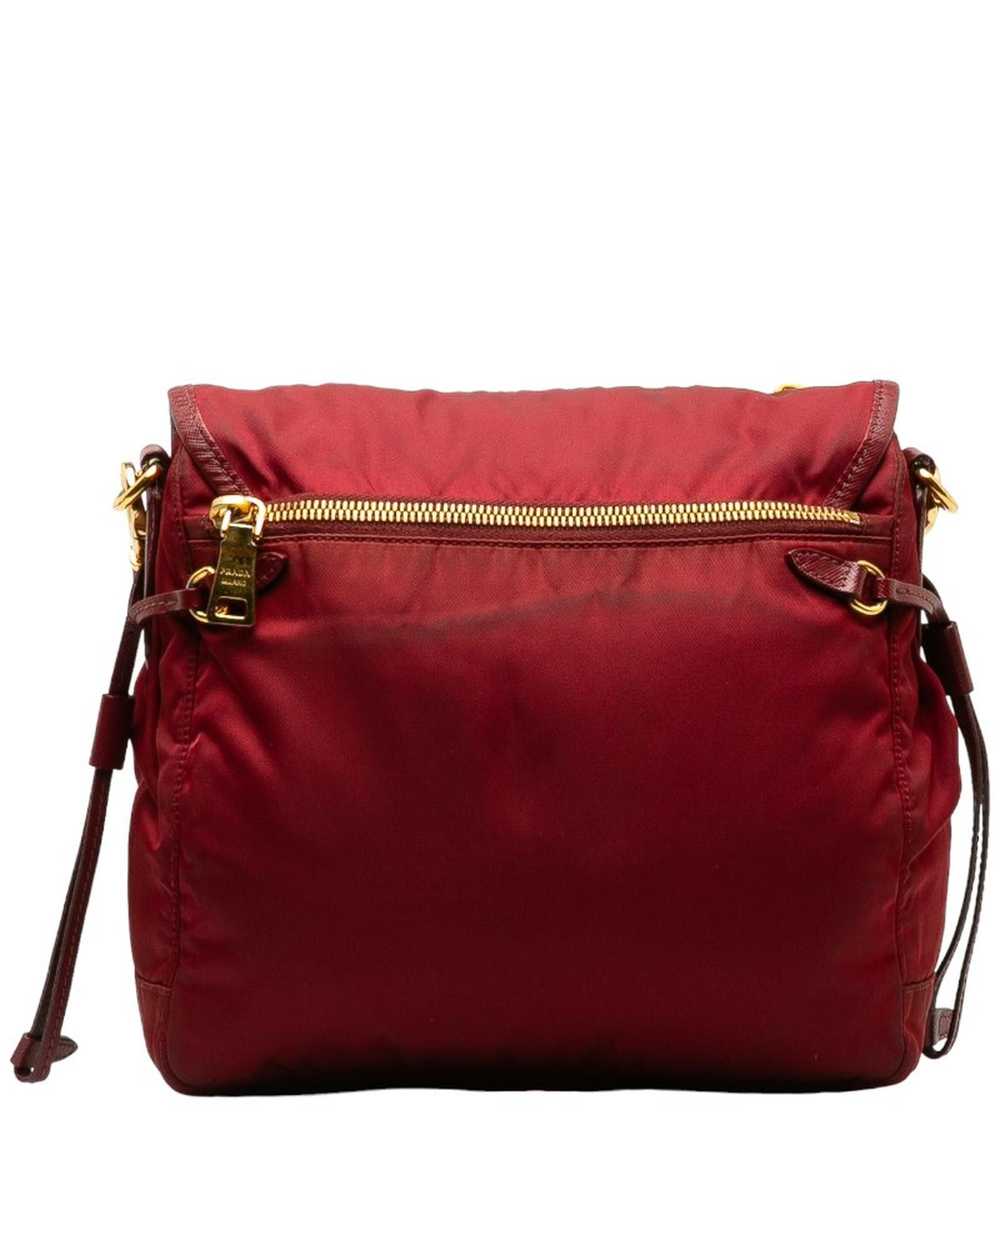 Prada Rose Gold Tessuto Messenger Bag in AB Condi… - image 3